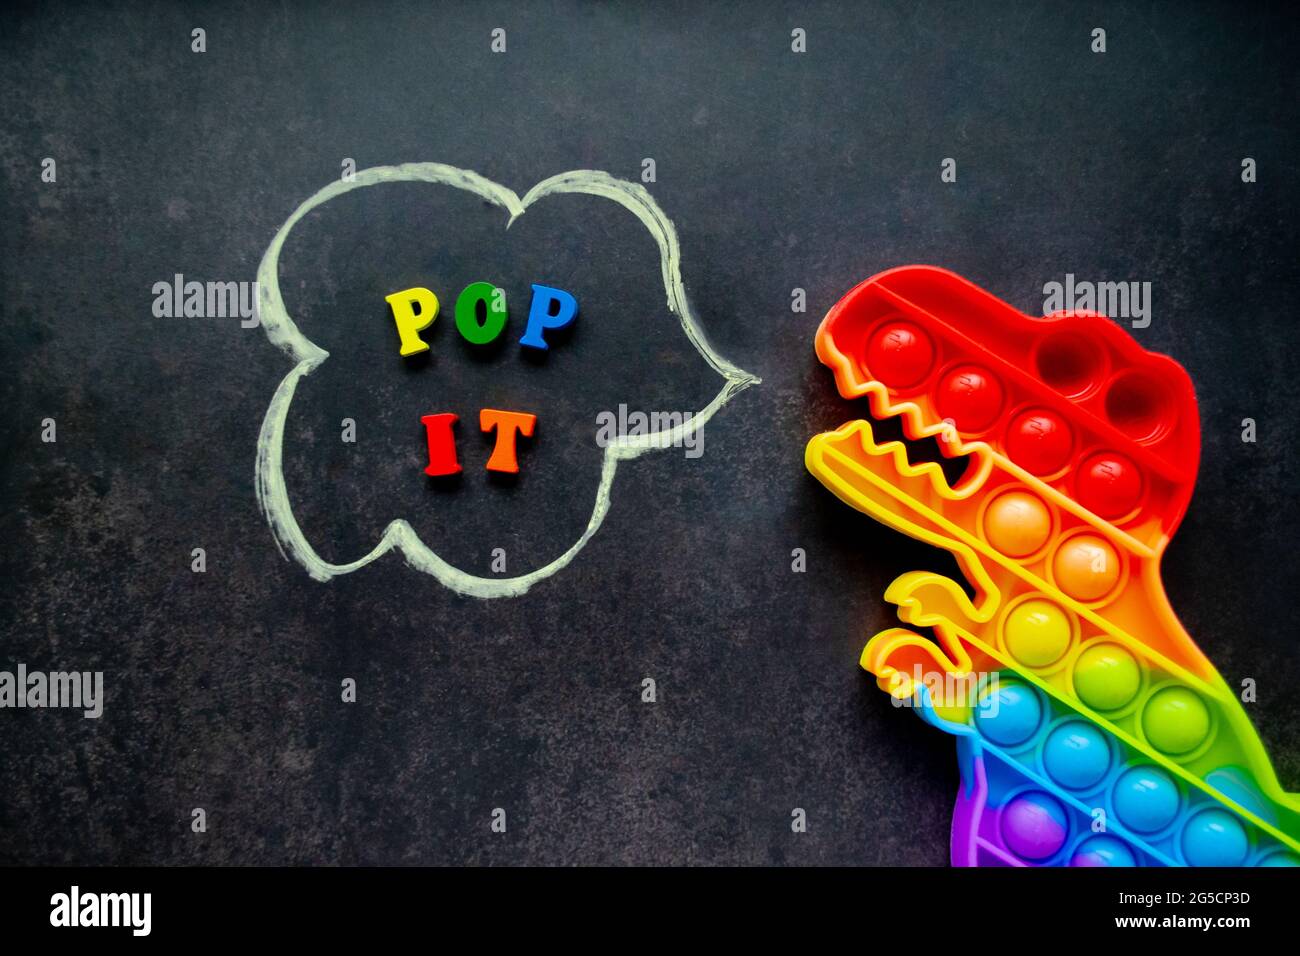 Pop it dinosaure jouet des couleurs arc-en-ciel sur un fond noir avec des  lettres multicolores et l'inscription - Pop it dans une bulle de parole  Photo Stock - Alamy